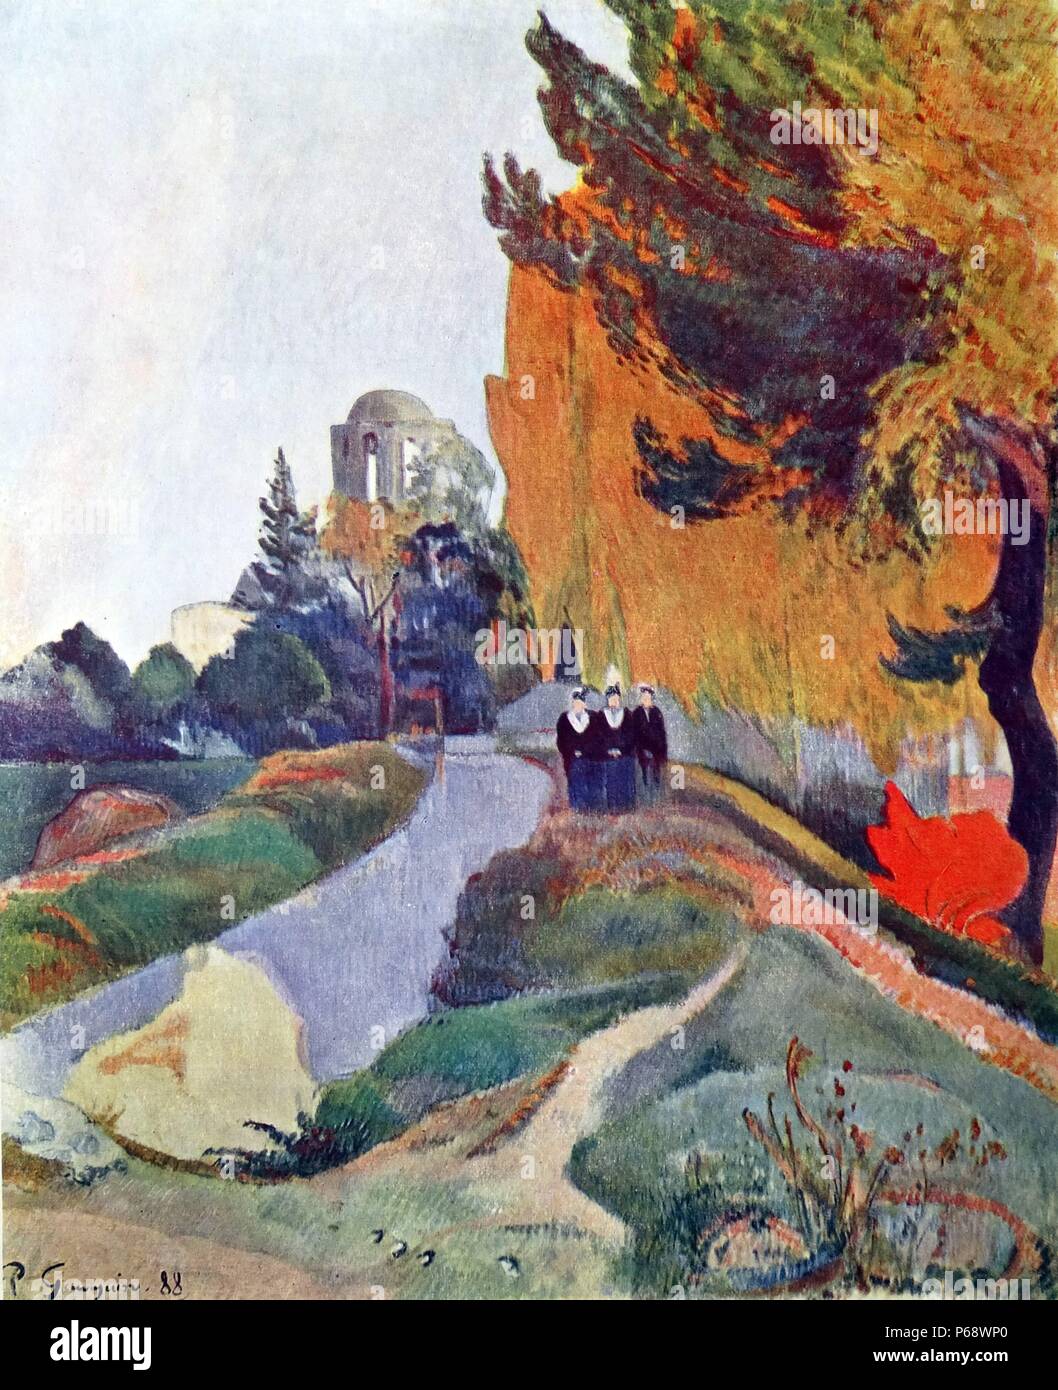 Paysage en Arles près de l'Église St-trophime', 1888 de Paul Gauguin Banque D'Images